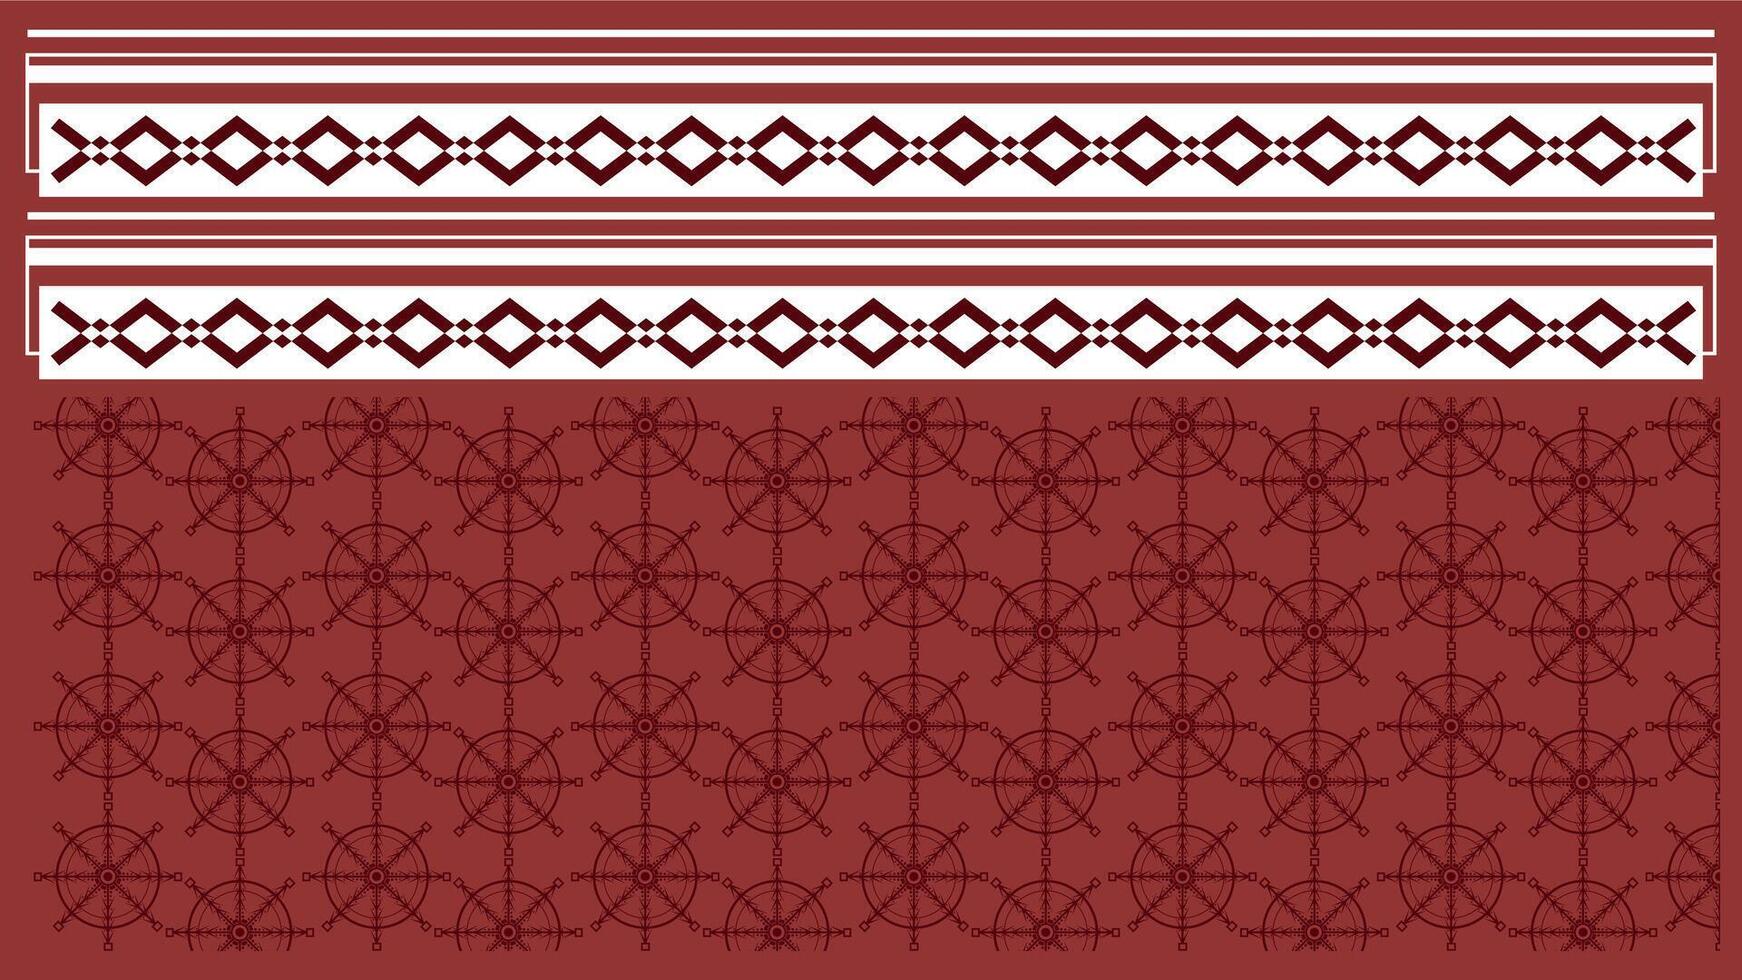 fundo étnico estilo colorida desatado fronteira. tribal decorativo fita polinésio tribal asteca padronizar para t camisa, calça, tecido, papel de parede, cartão modelo, invólucro papel, tapete, têxtil, cobrir. vetor